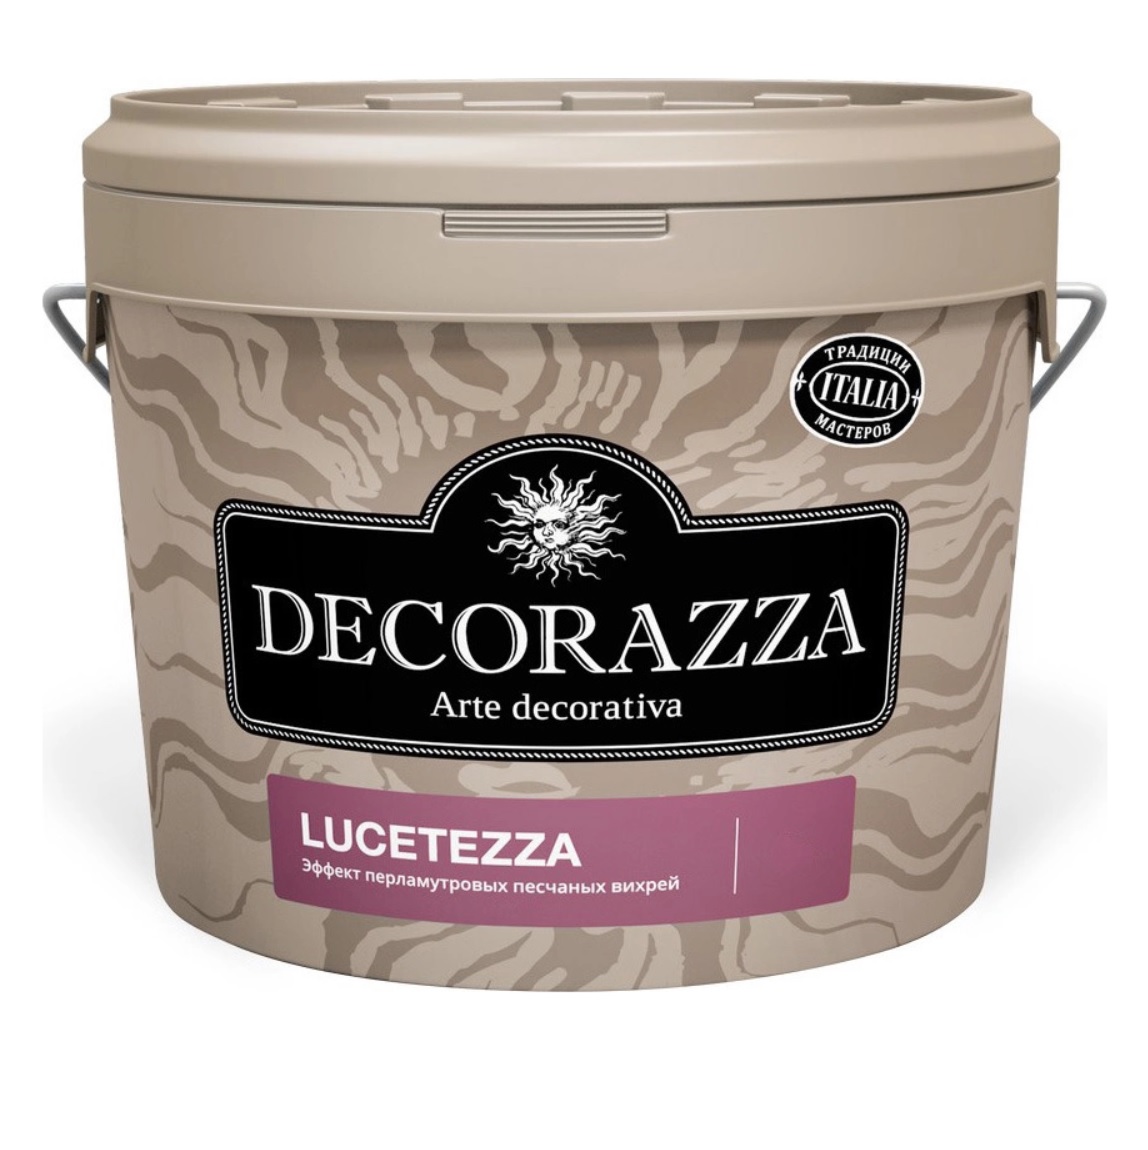 Декоративная краска Decorazza lucetezza база aluminium 1.0кг декоративная краска decorazza seta oro 1 0кг